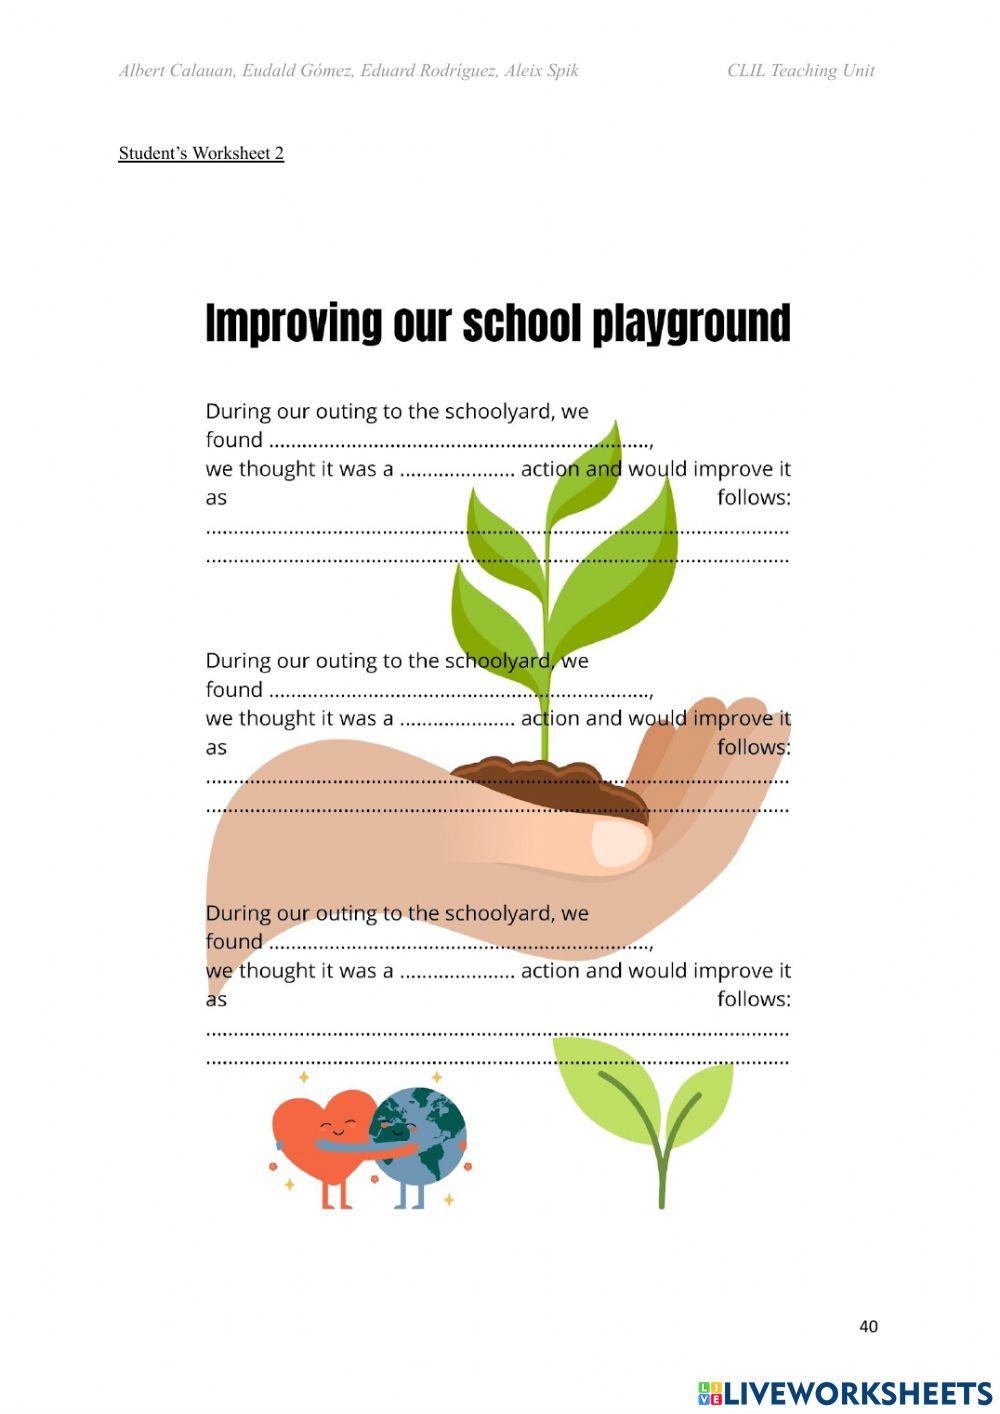 Improve the school playground